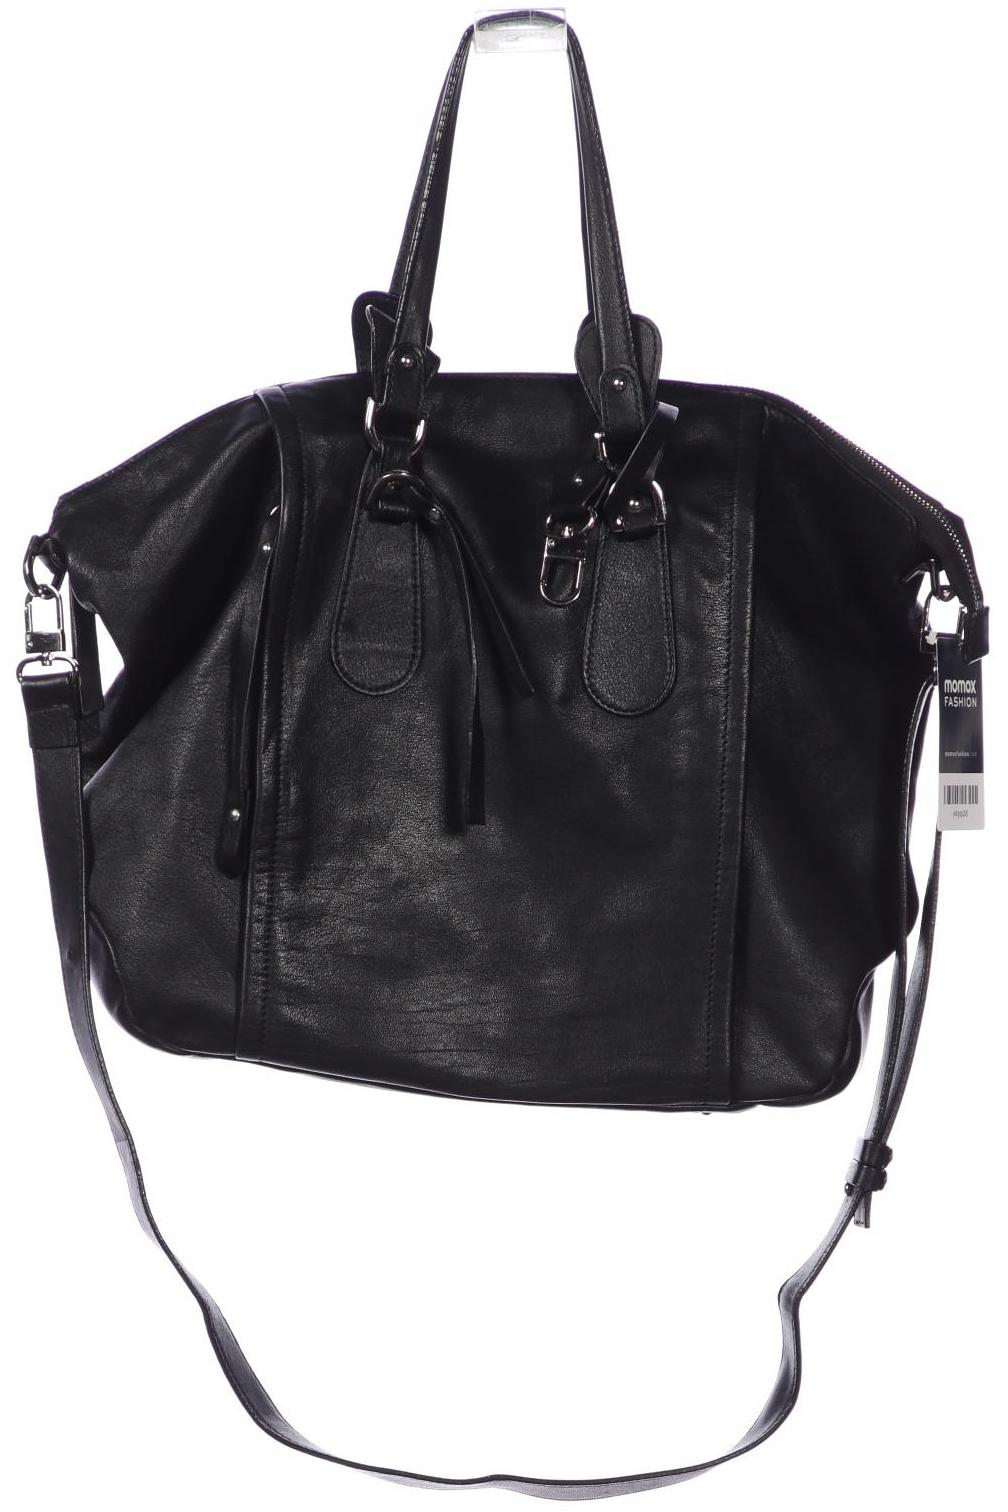 LAMARTHE Damen Handtasche, schwarz von LAMARTHE